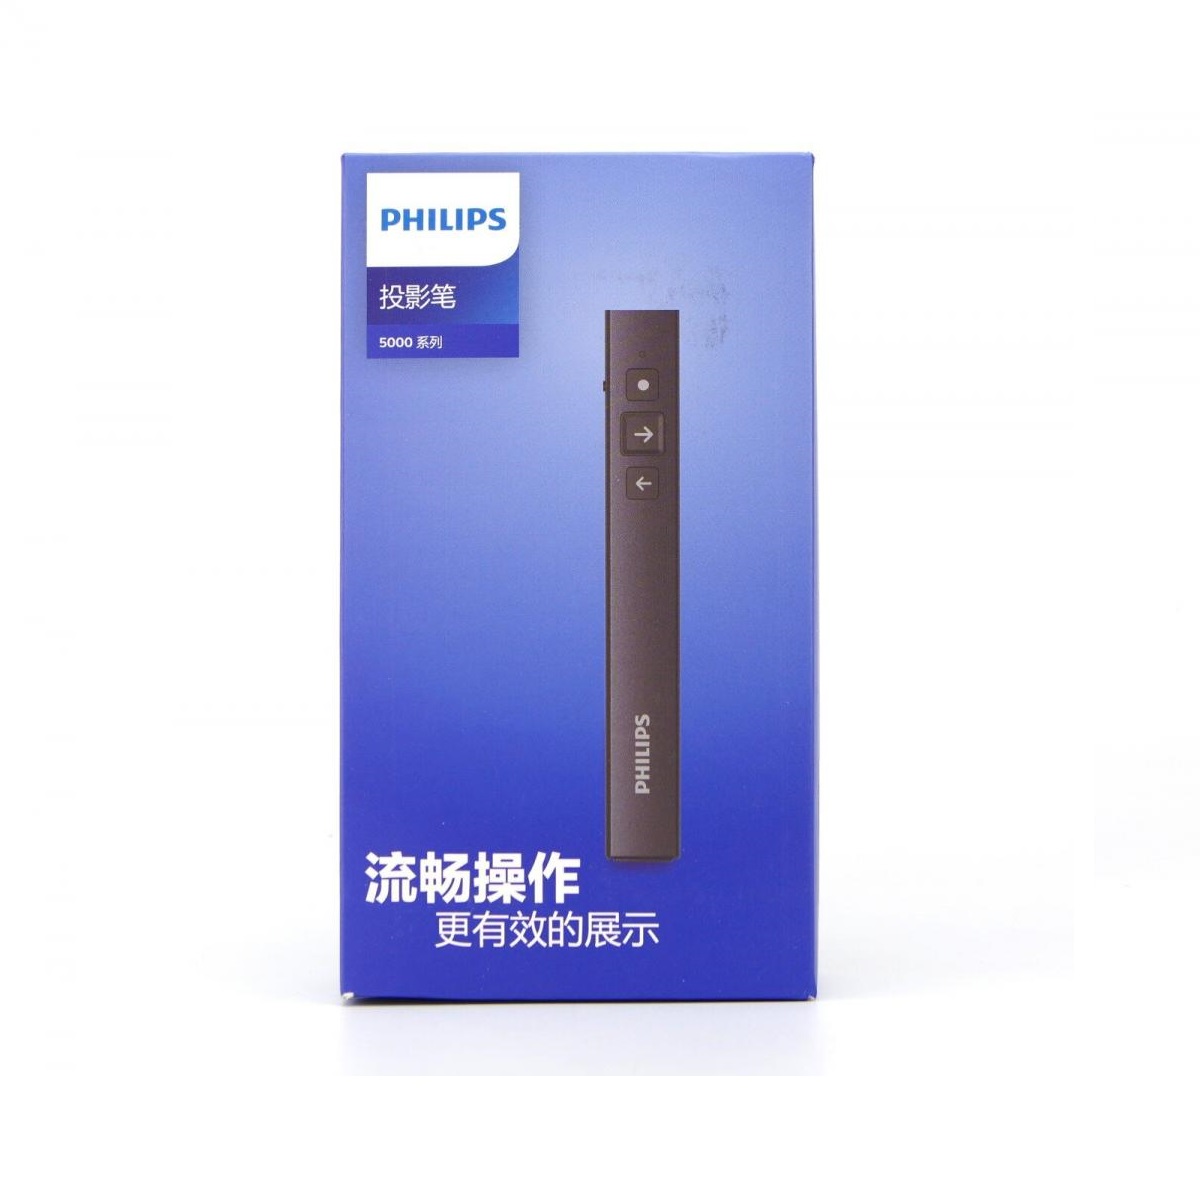 PHILIPS Wireless Laser Pointer Presenter - SPT9507